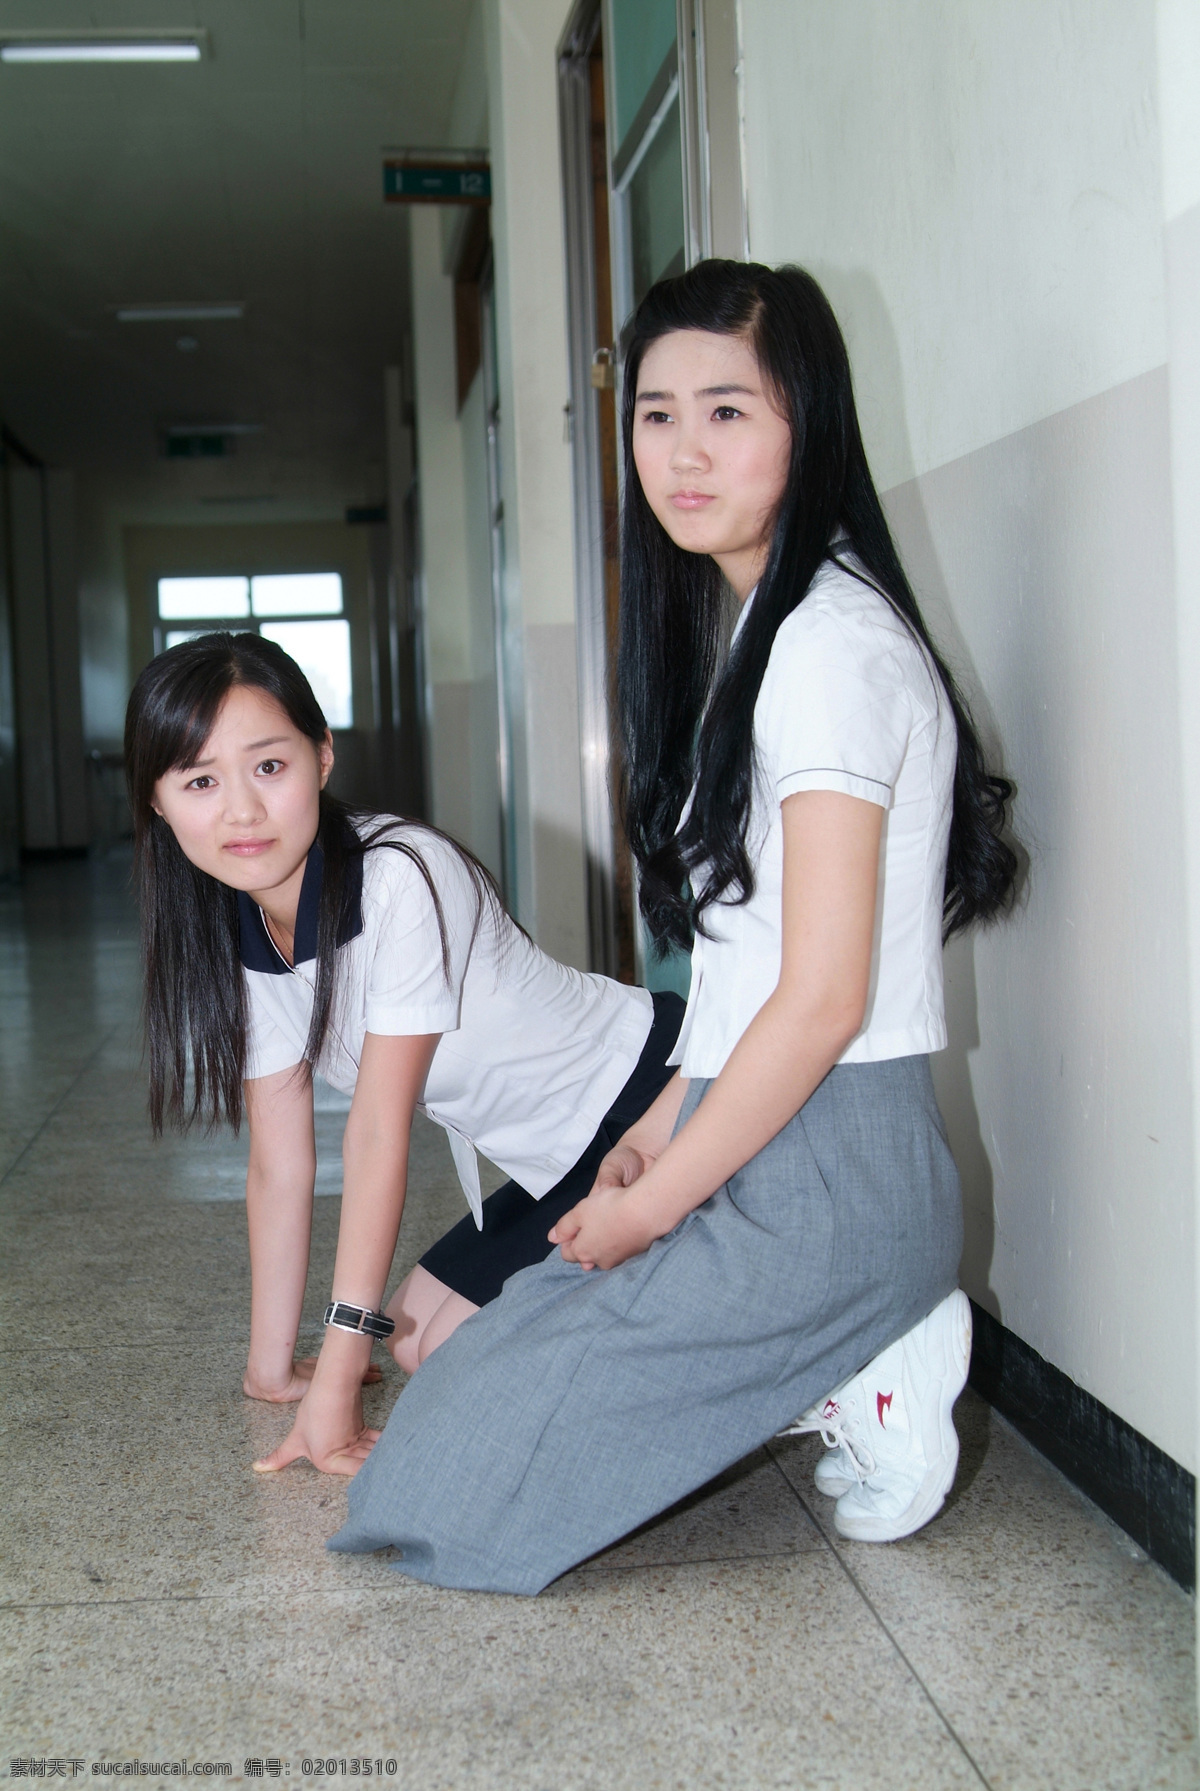 学校 走廊 里 可爱 女生 女孩 青少年 朝气 学生 韩国 长发女生 微笑 搞怪表情 朋友 友谊 教育 校服 校园文化 摄影图 高清图片 生活人物 人物图片